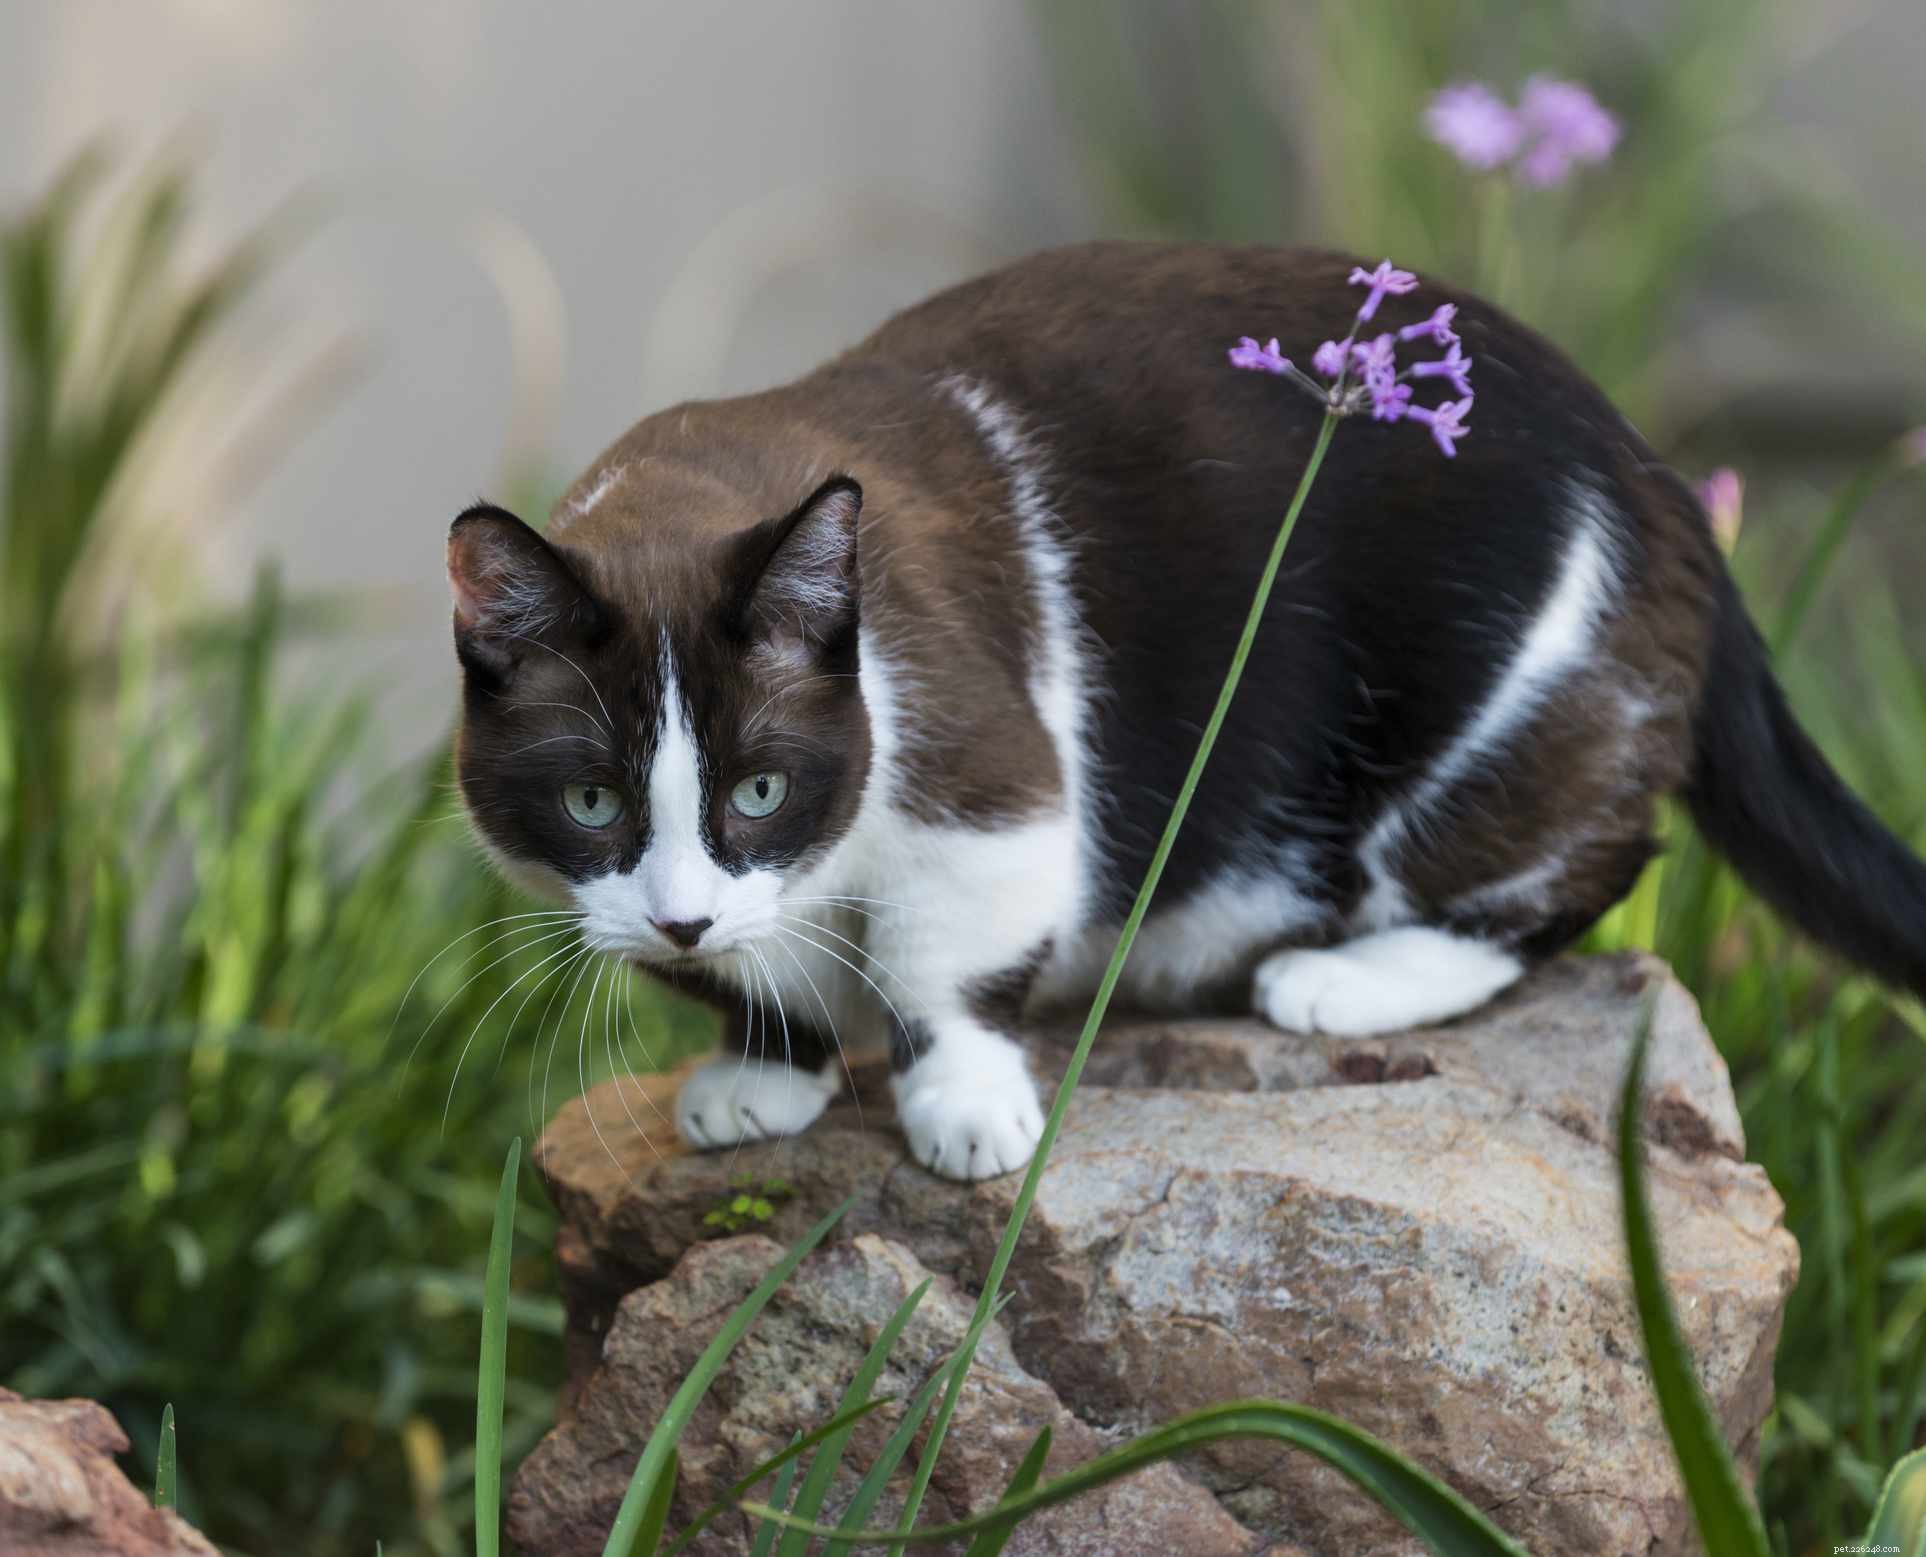 흑백으로 채색된 10가지 고양이 품종